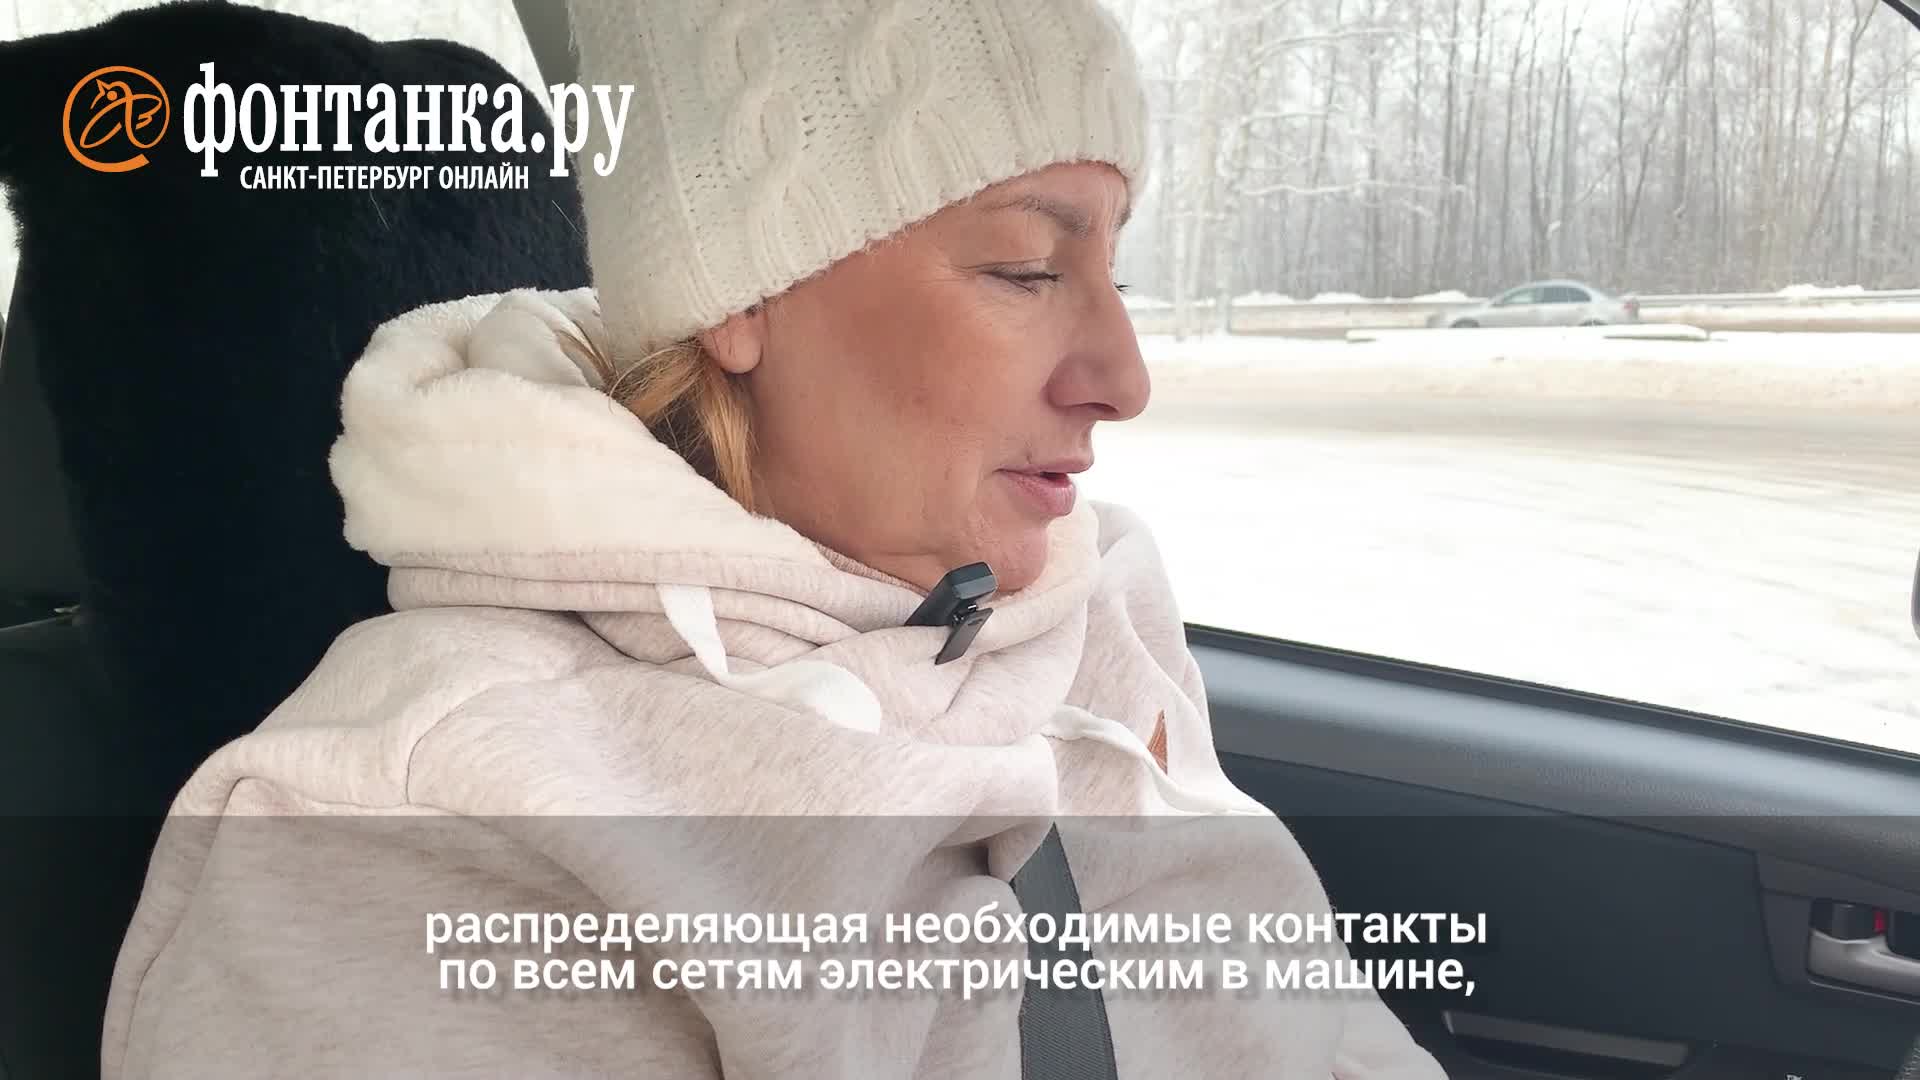 Русское порно в машине зимой: смотреть видео онлайн